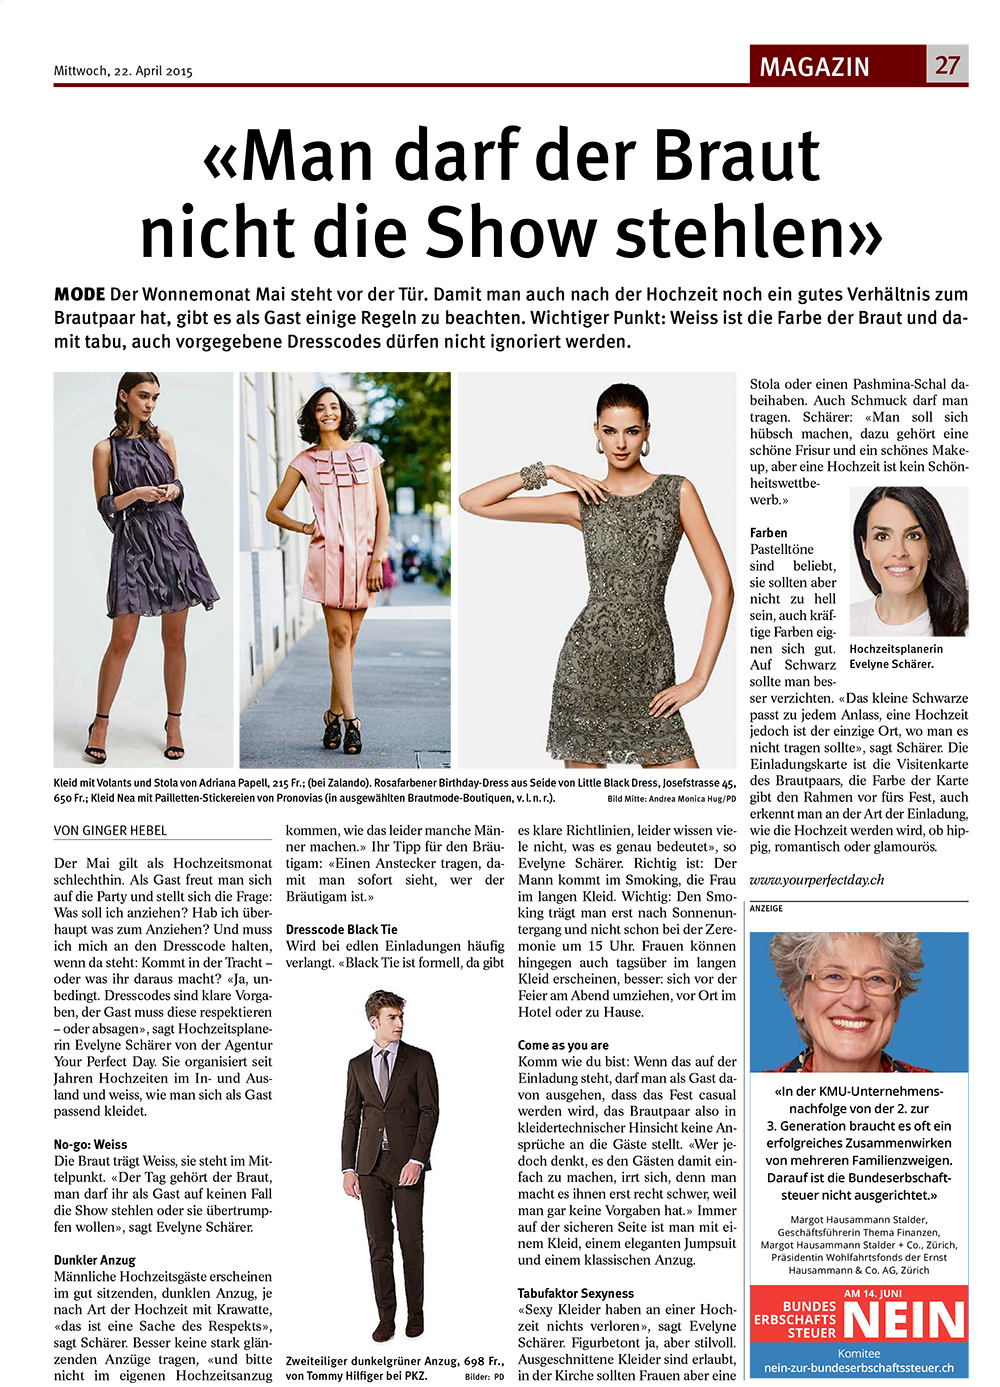 Tagblatt der Stadt Zürich - Mode für Hochzeitsgäste